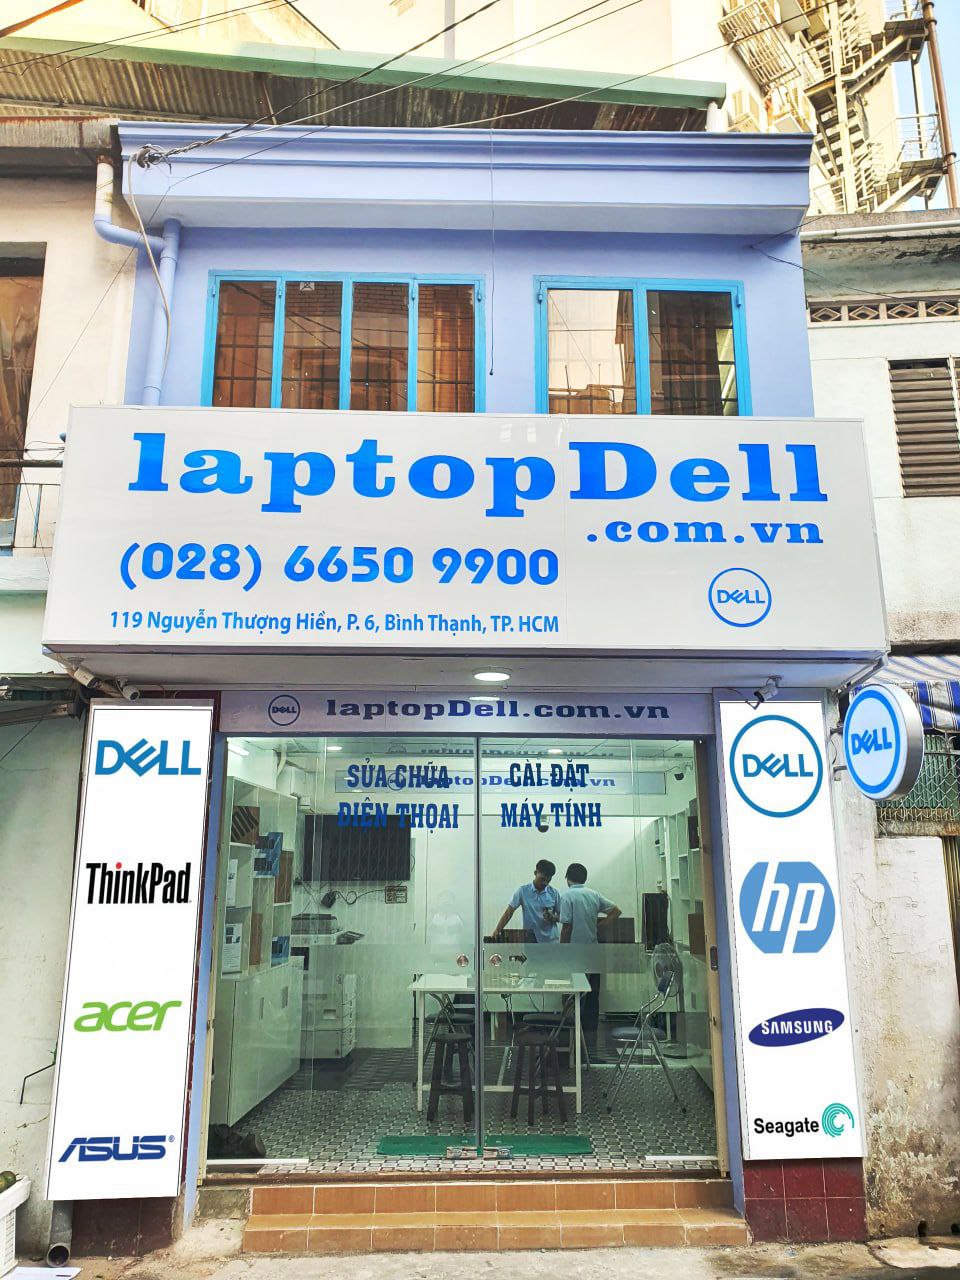 Địa chỉ bán laptop Dell, nâng cấp SSD cho Laptop Dell uy tin ở TPHCM